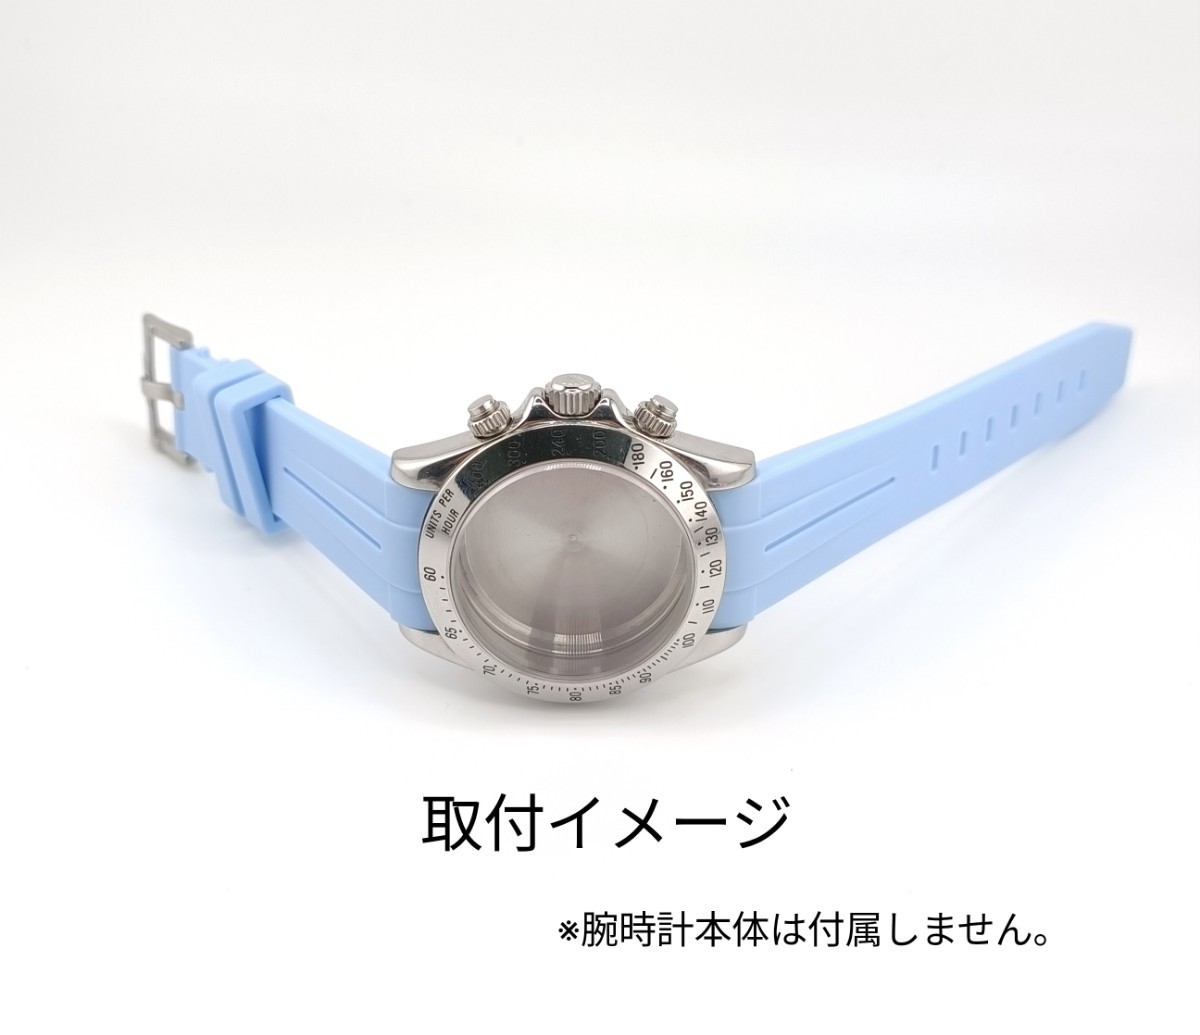 20mm 腕時計 交換用 社外品 ラバーベルト カーブエンド スカイブルー